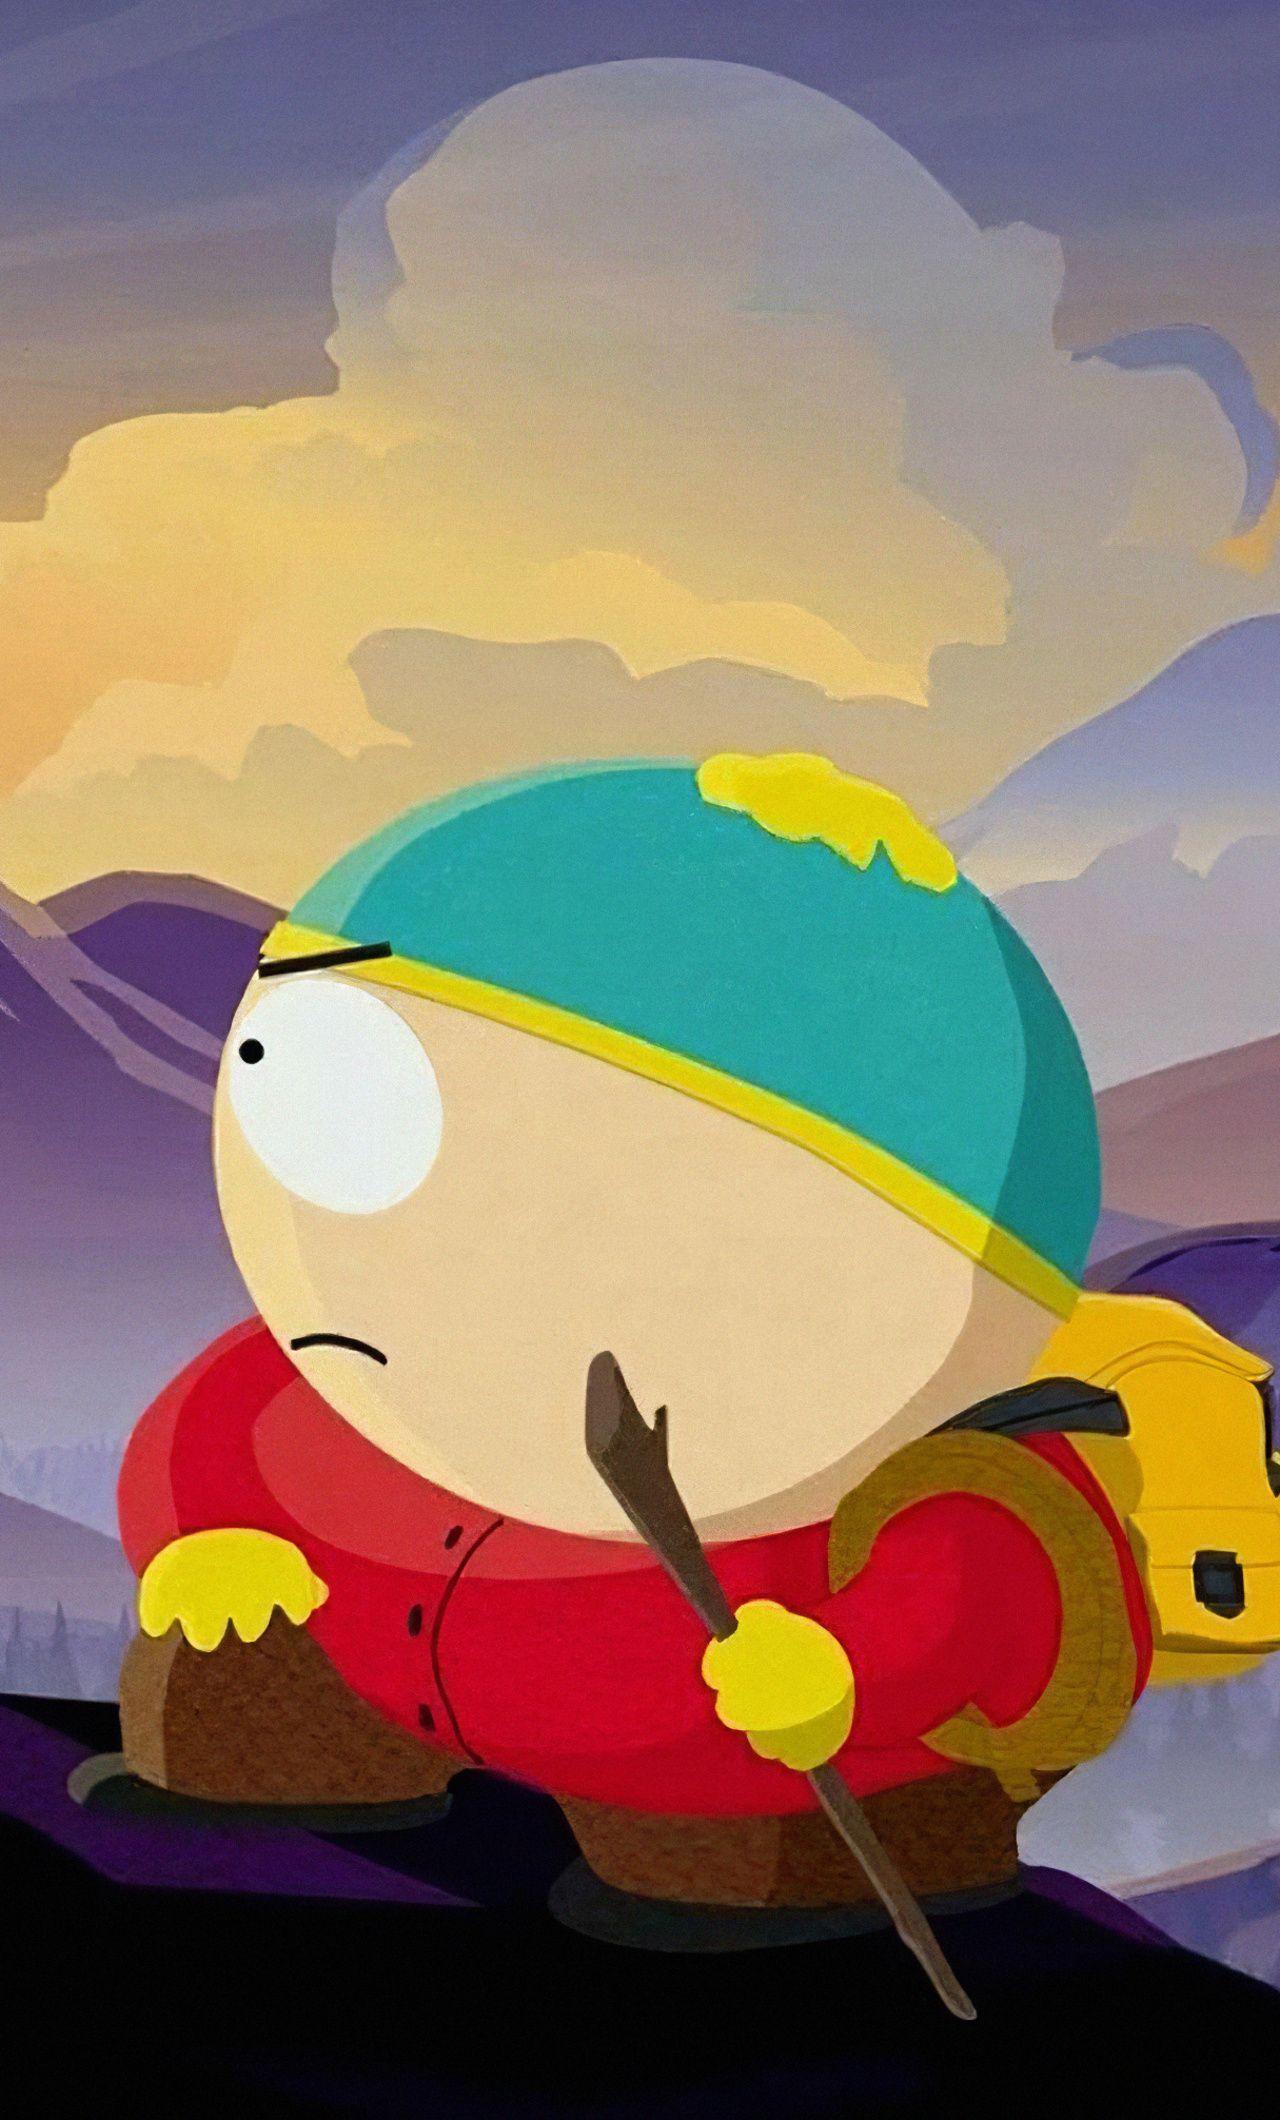 Eric Cartman Wallpapers Top Free Eric Cartman Backgrounds Wallpaperaccess